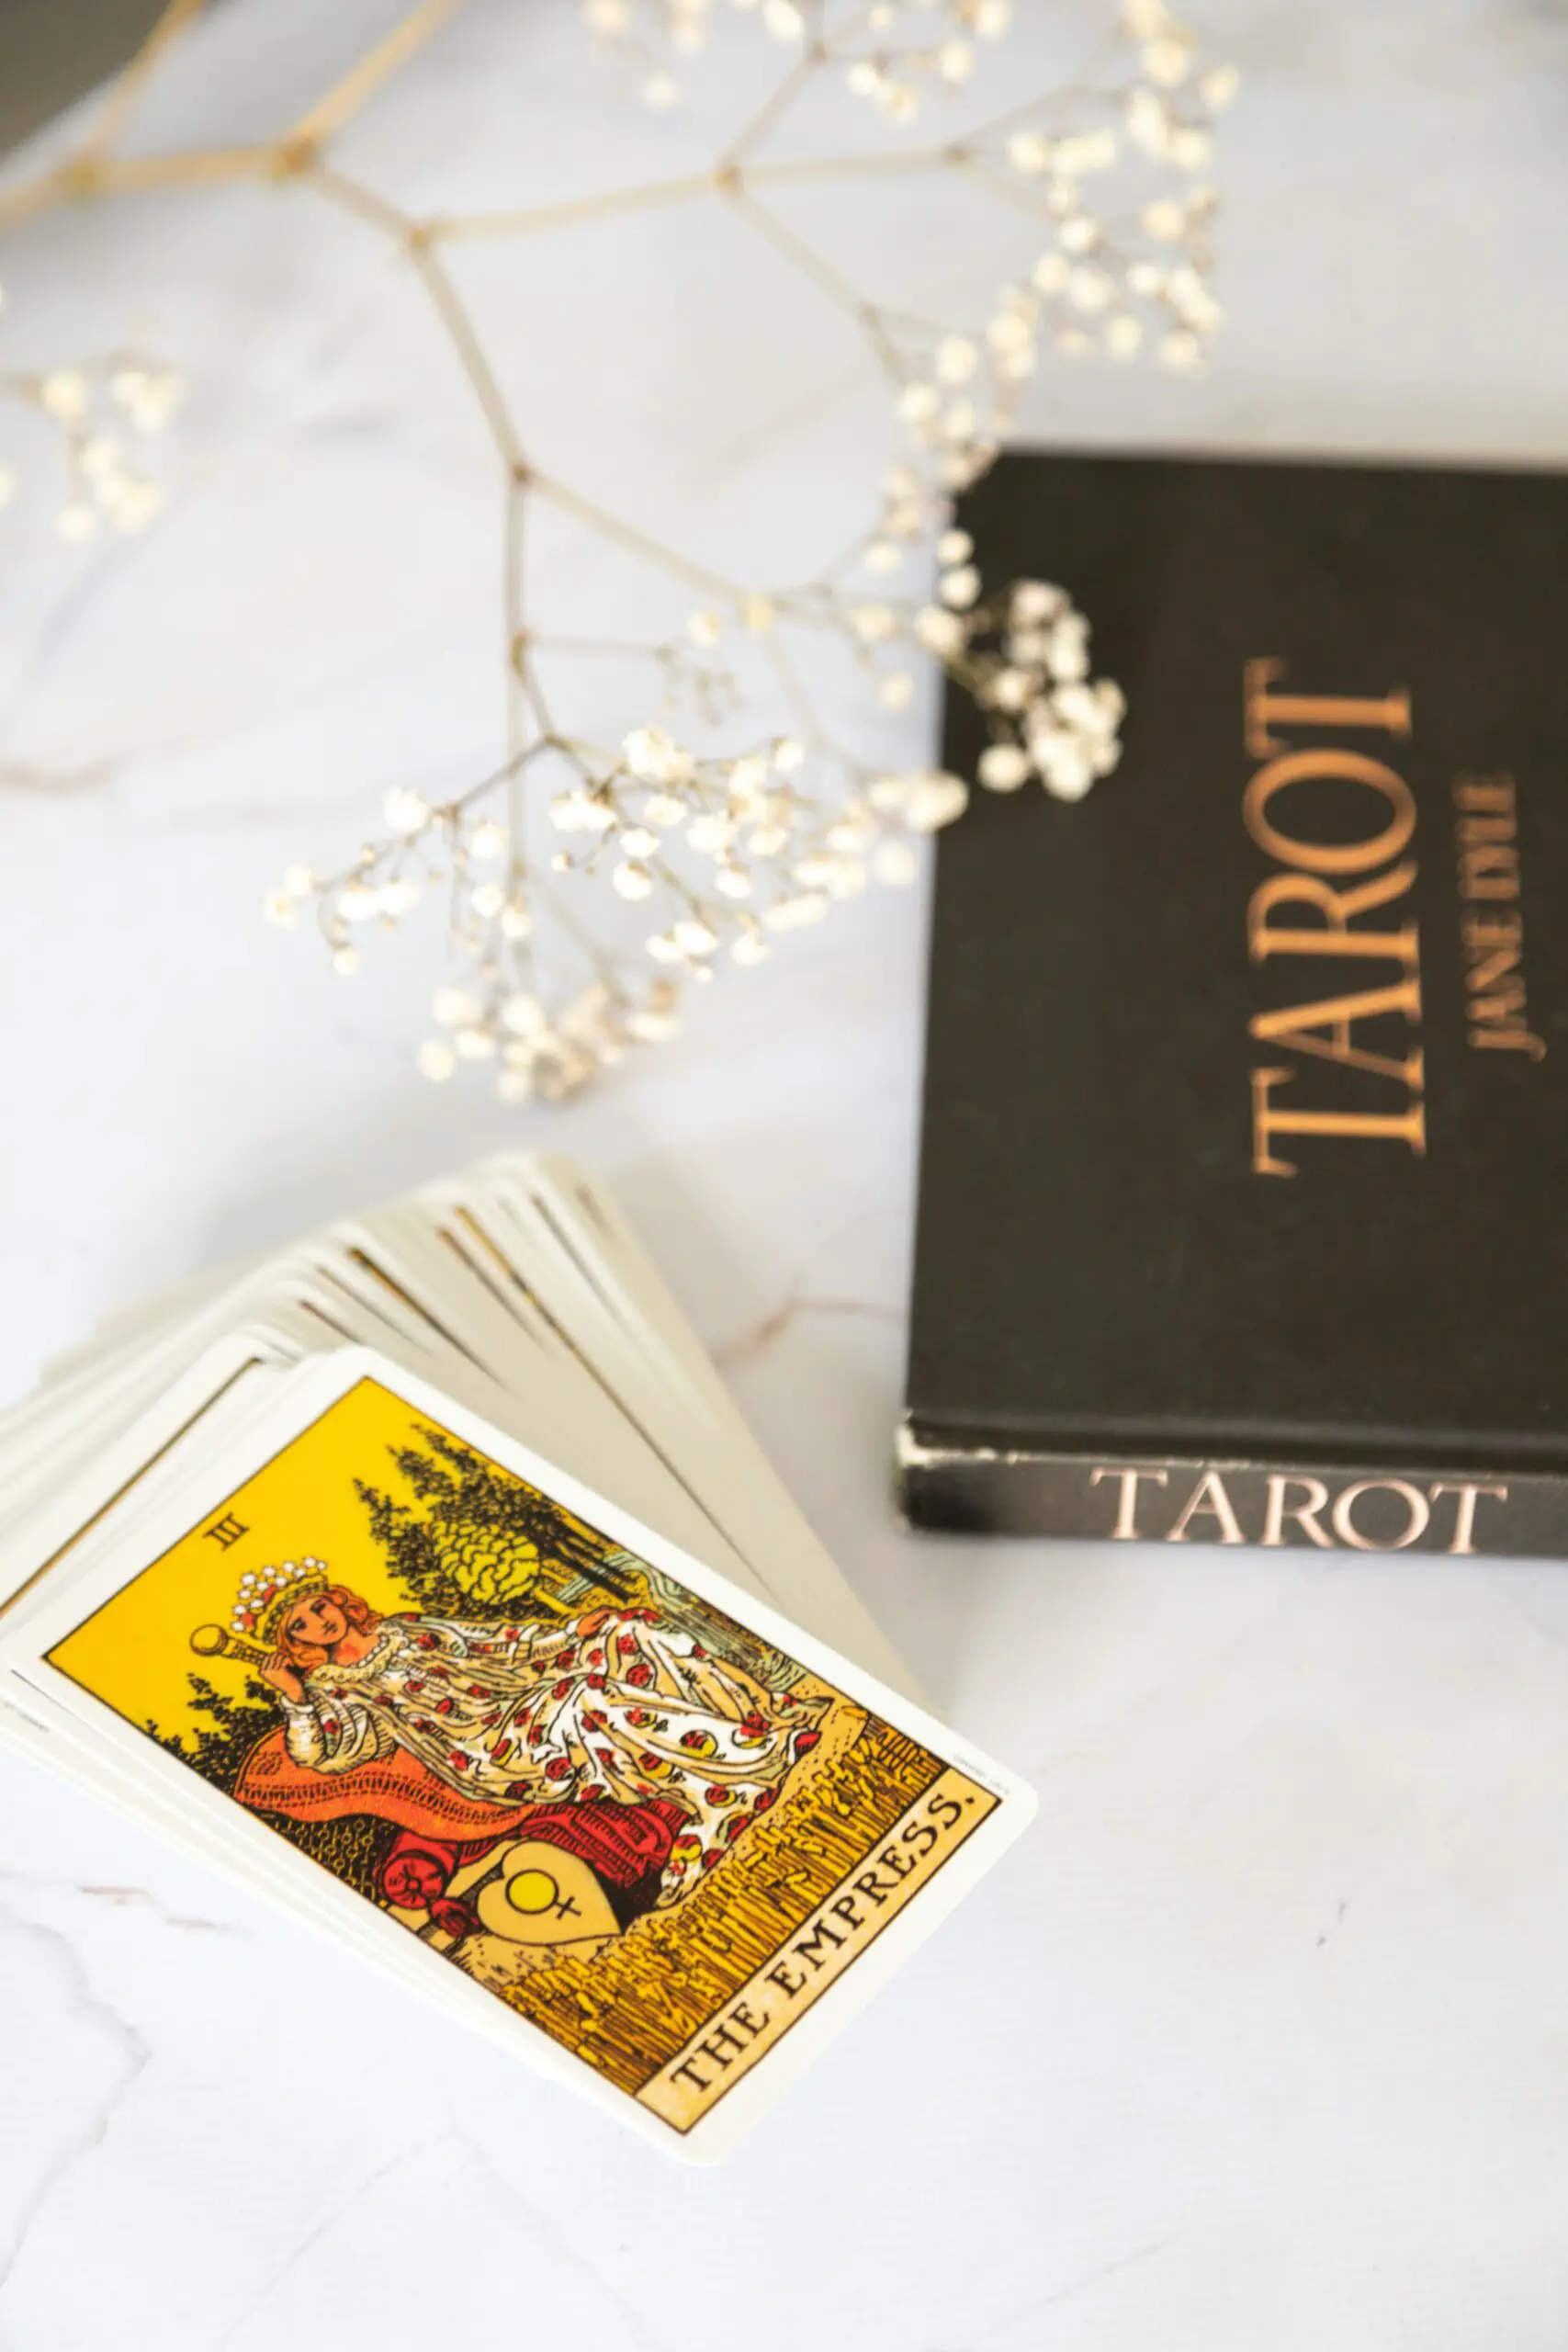 Tarot Card Games